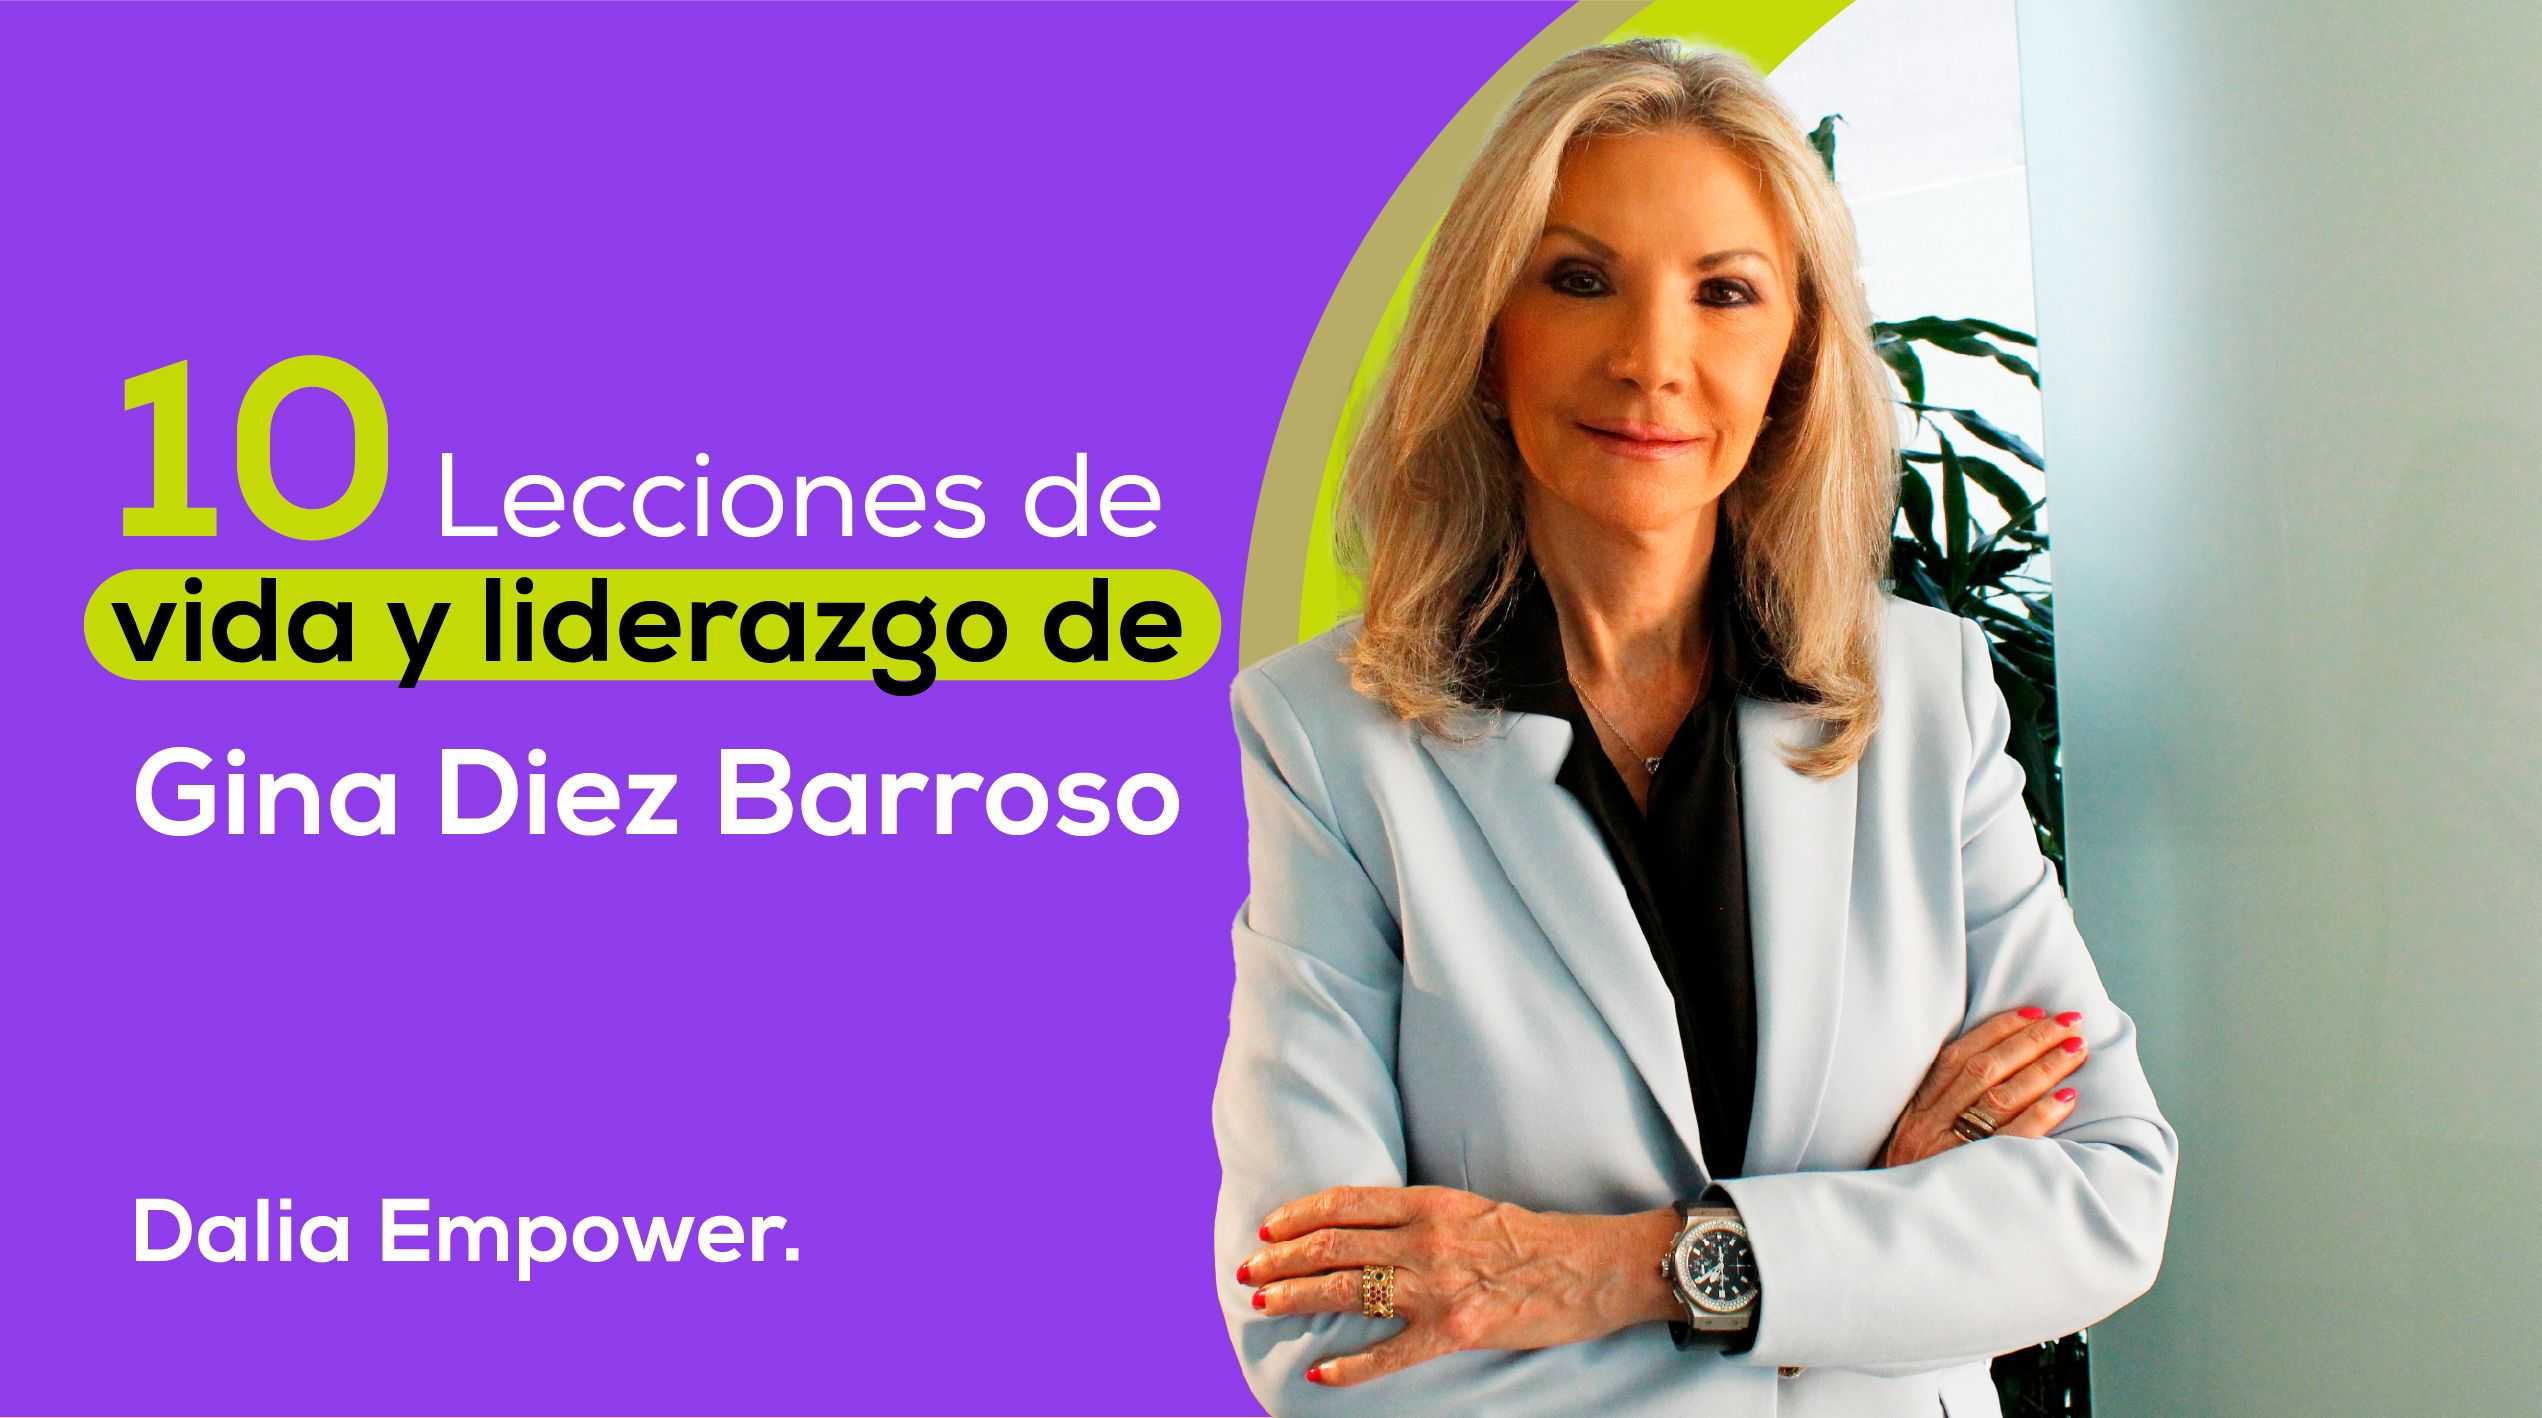 10 lecciones de vida y liderazgo de Gina Diez Barroso